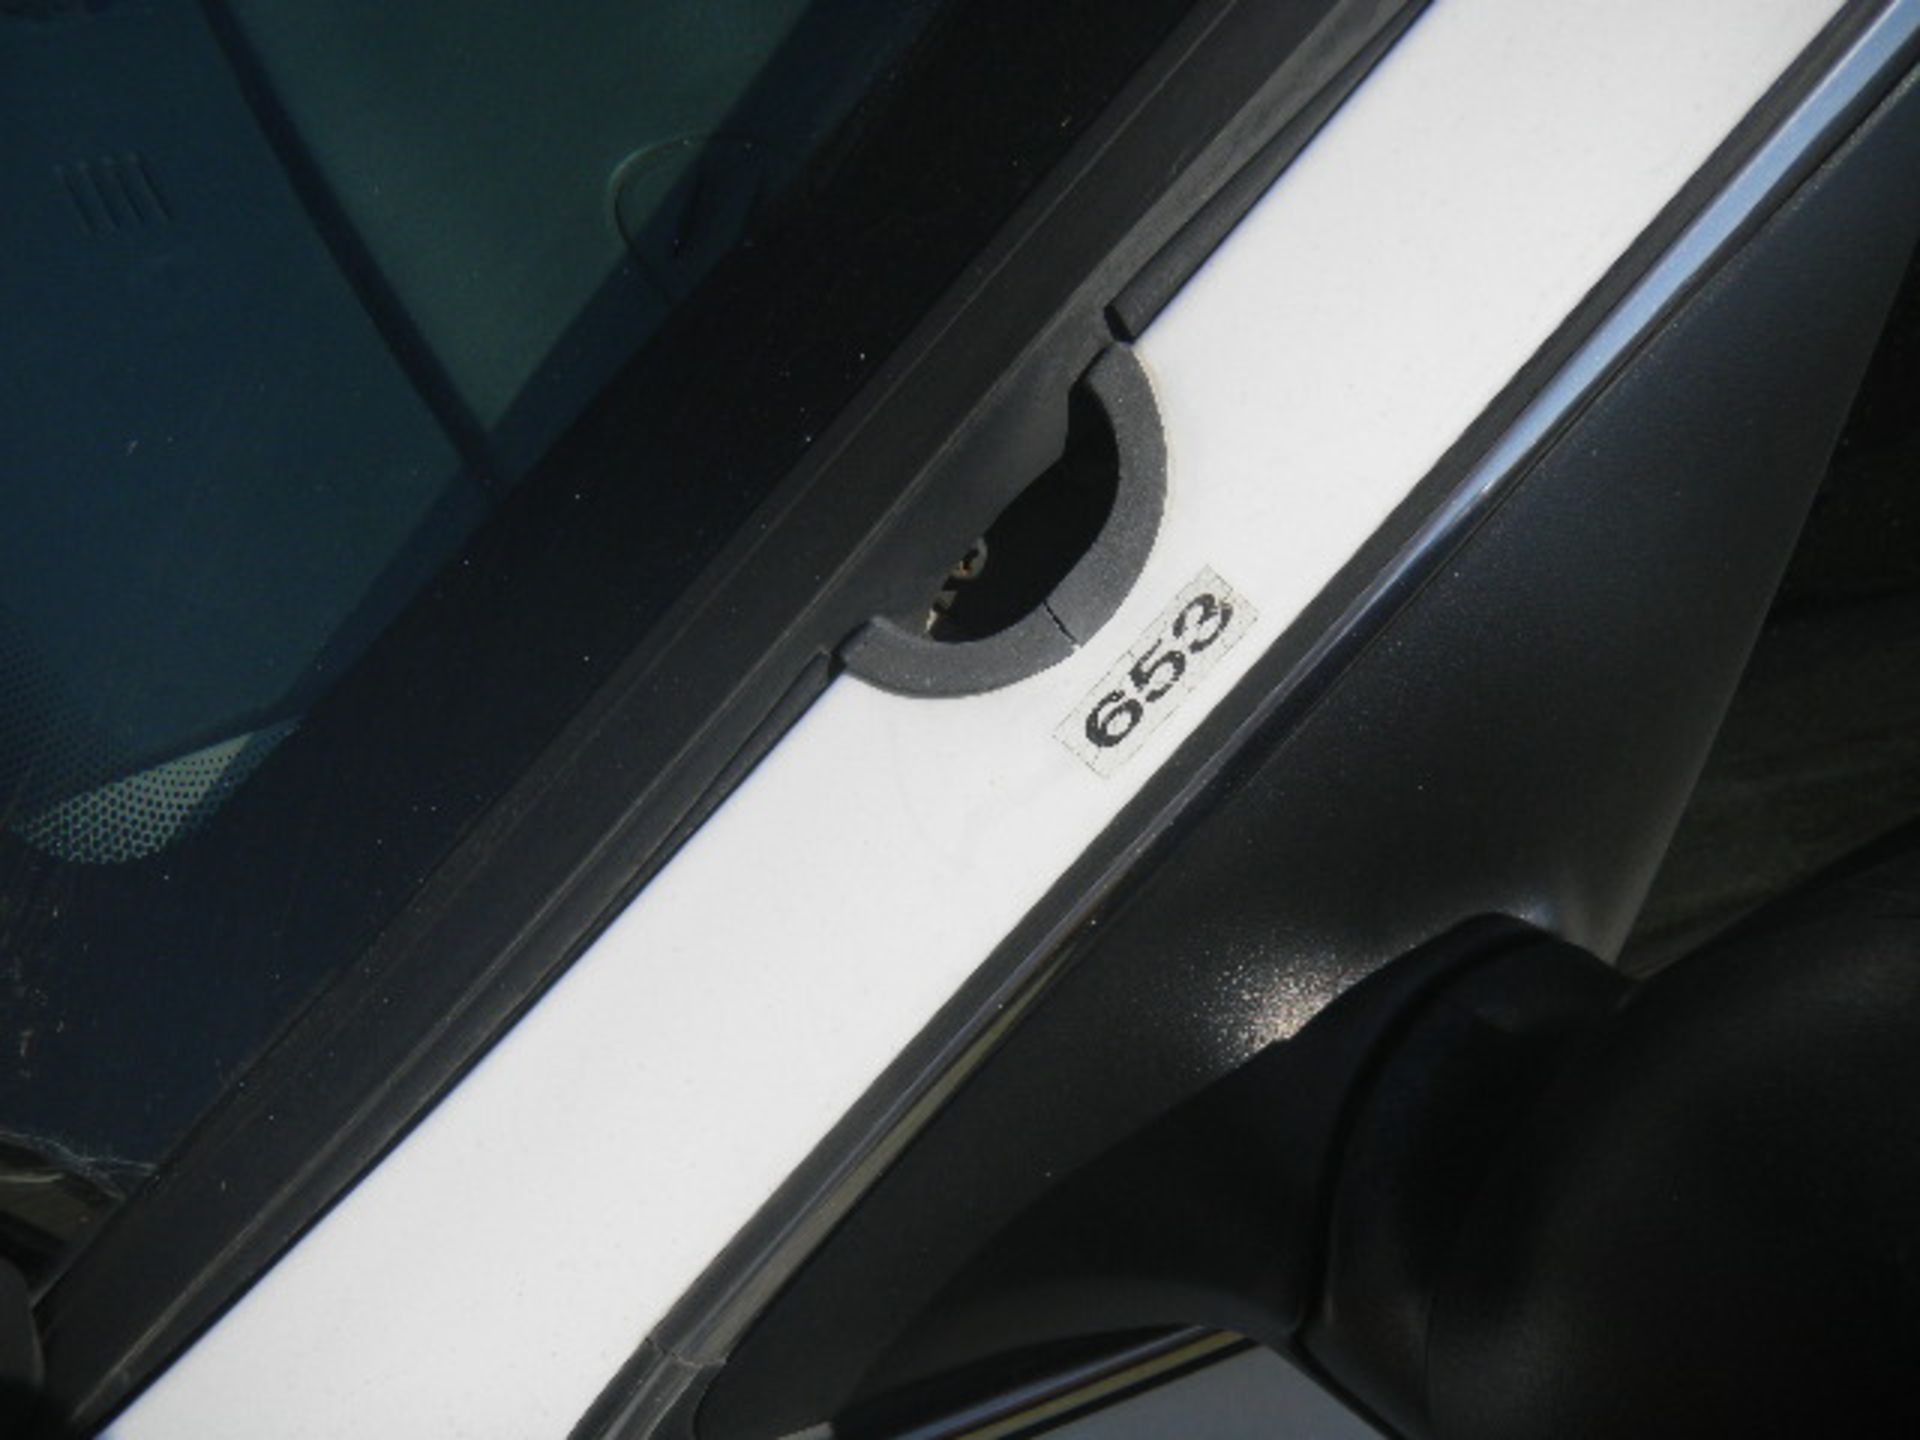 2009 Ford Crown Vic Black/White Patrol Car - Asset I.D. #653 - Last of Vin (139086) - Image 9 of 9